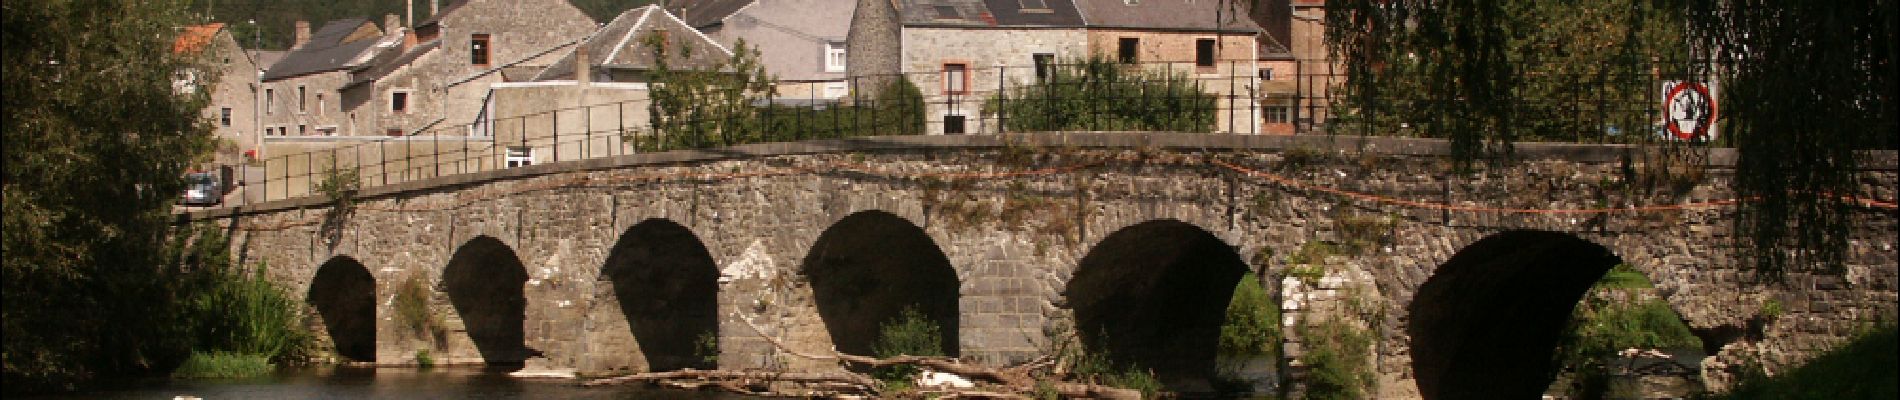 Point d'intérêt Viroinval - Le vieux pont de Treignes  - Photo